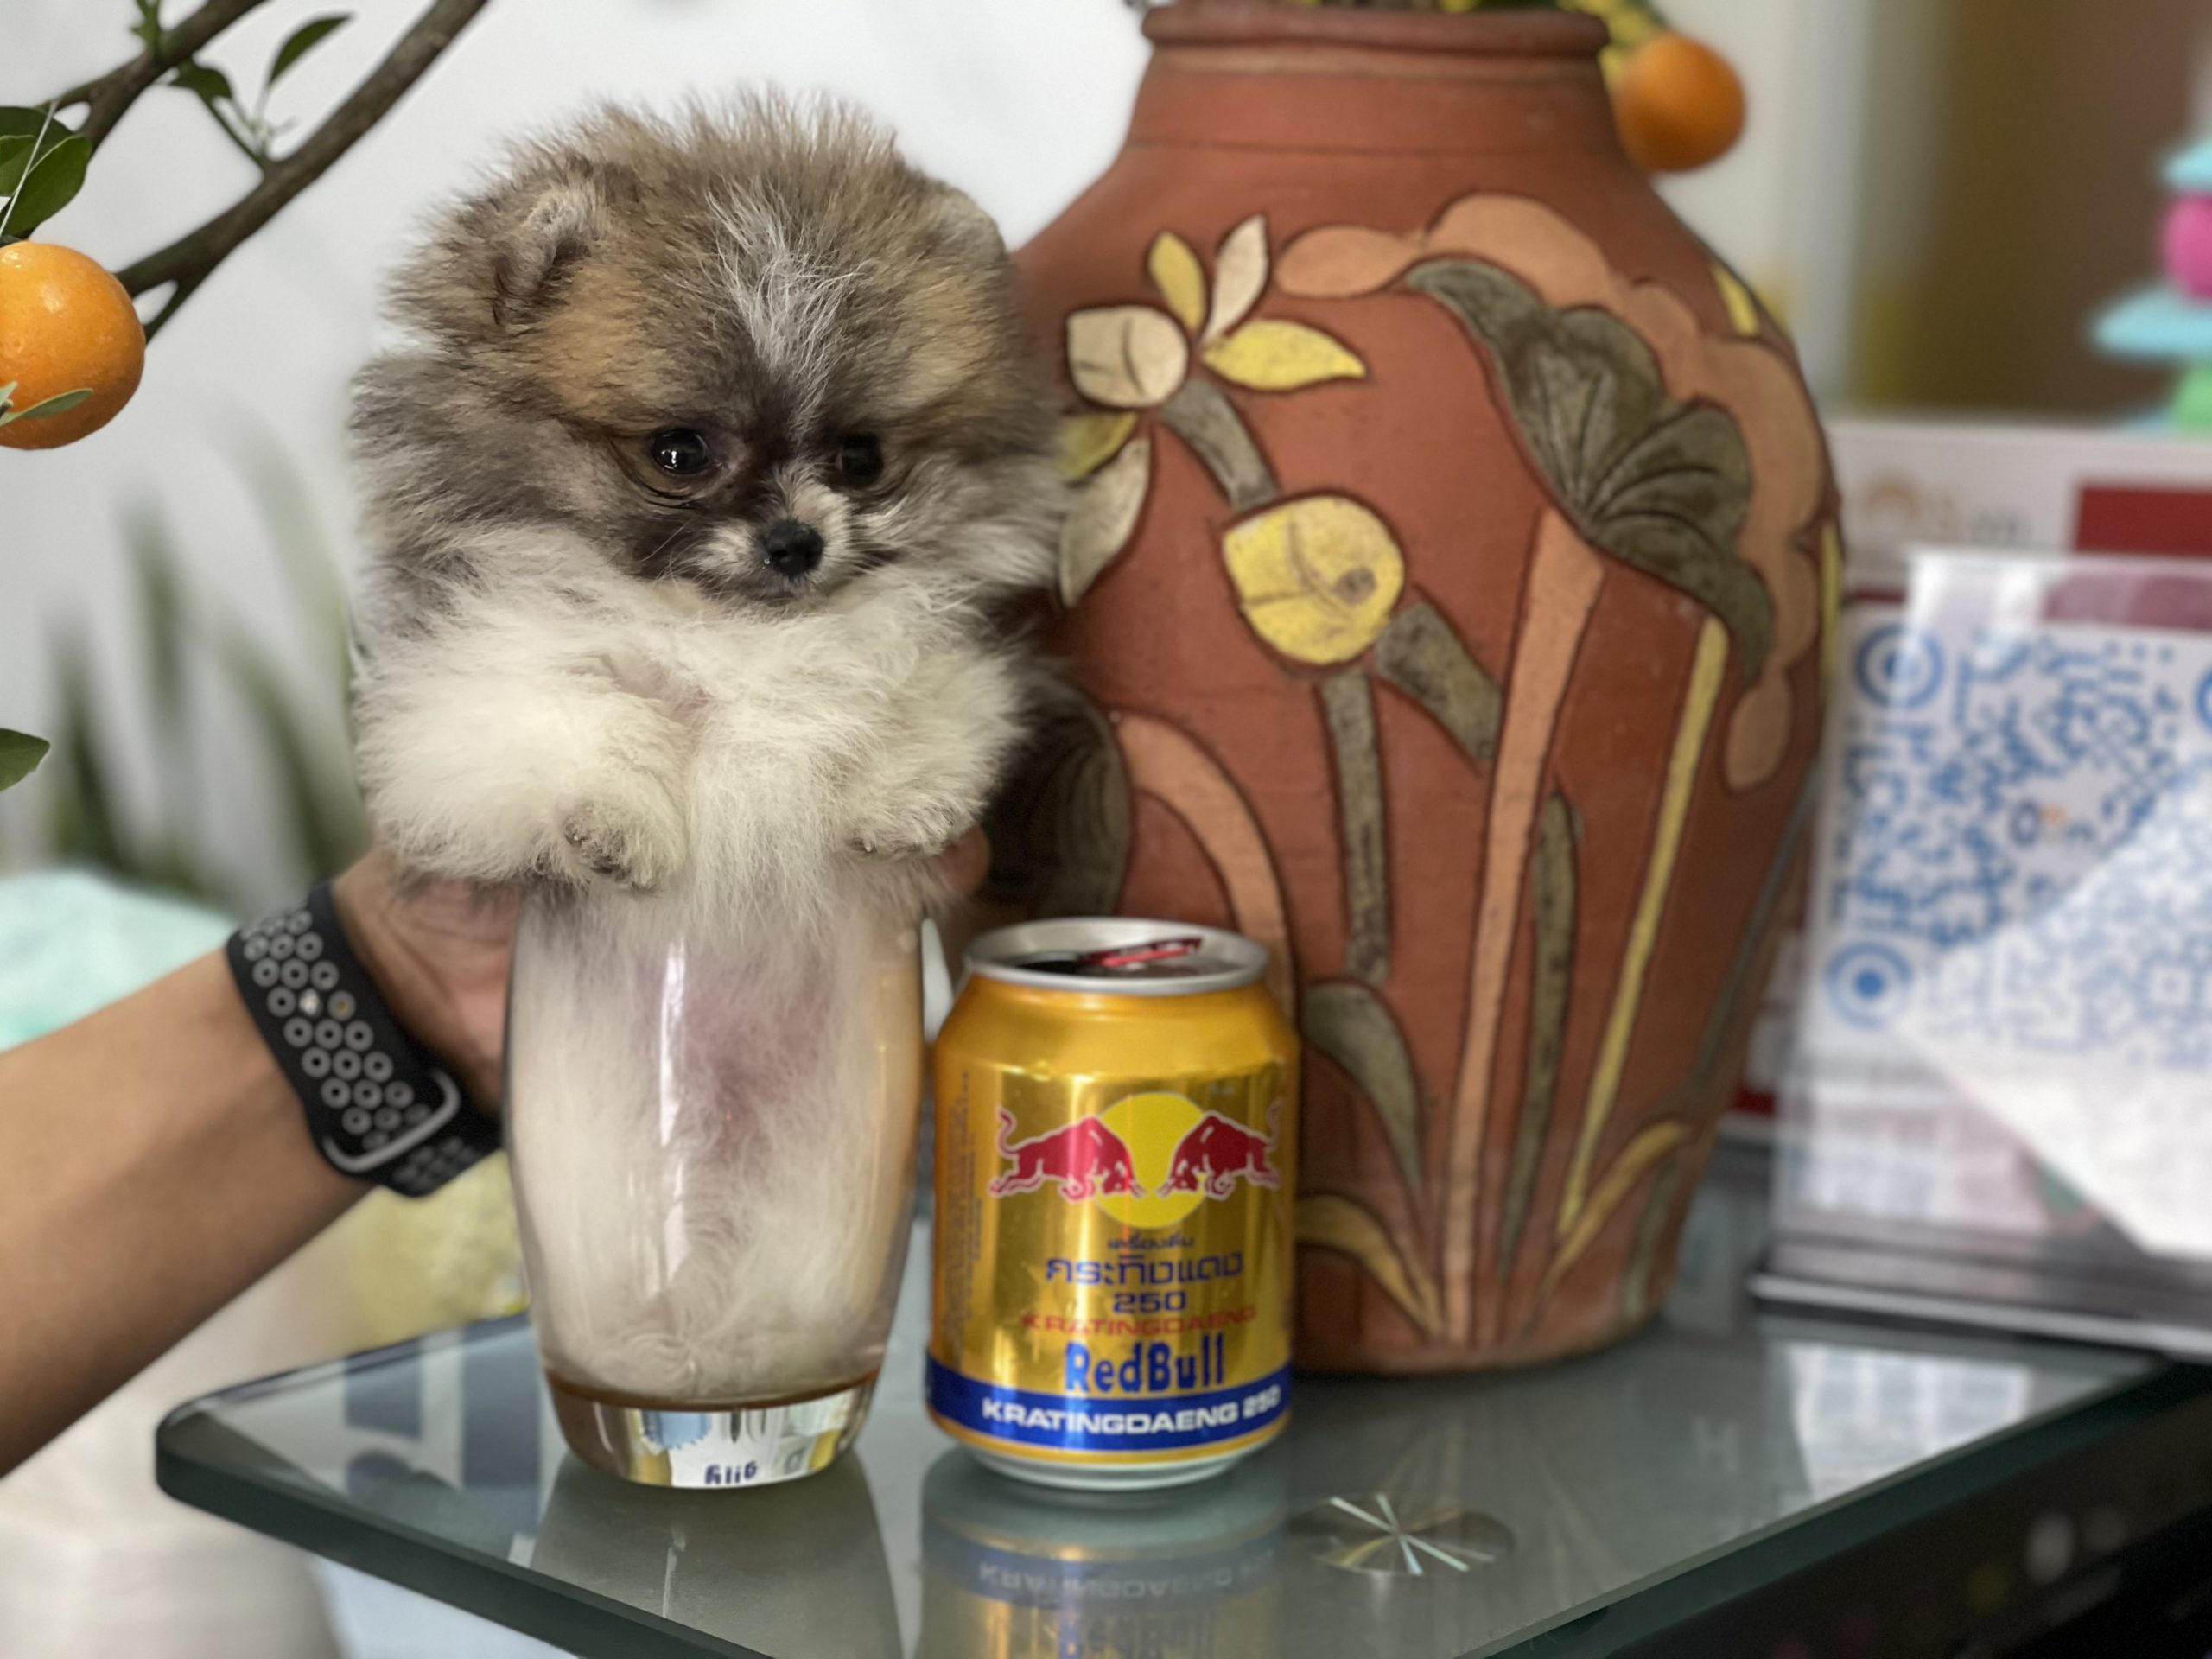 Chó Teacup là những chú chó nhỏ nhắn nặng chỉ vài trăm gram đặt vừa trong 1 tách trà